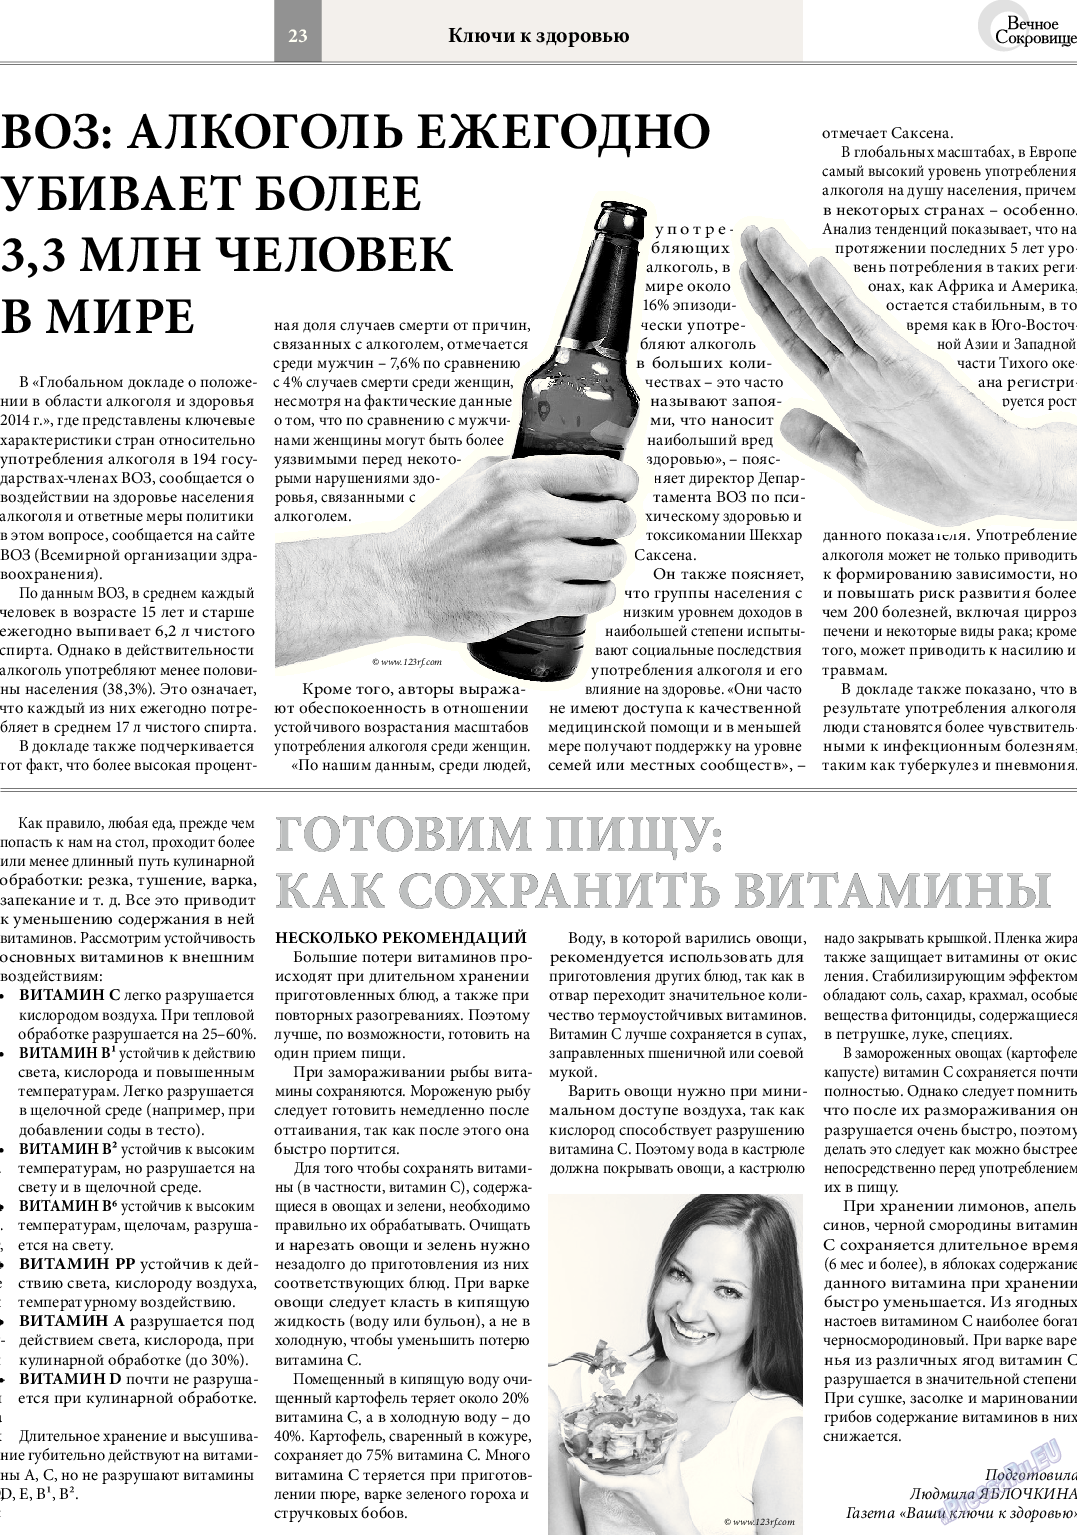 Вечное сокровище, газета. 2014 №3 стр.23